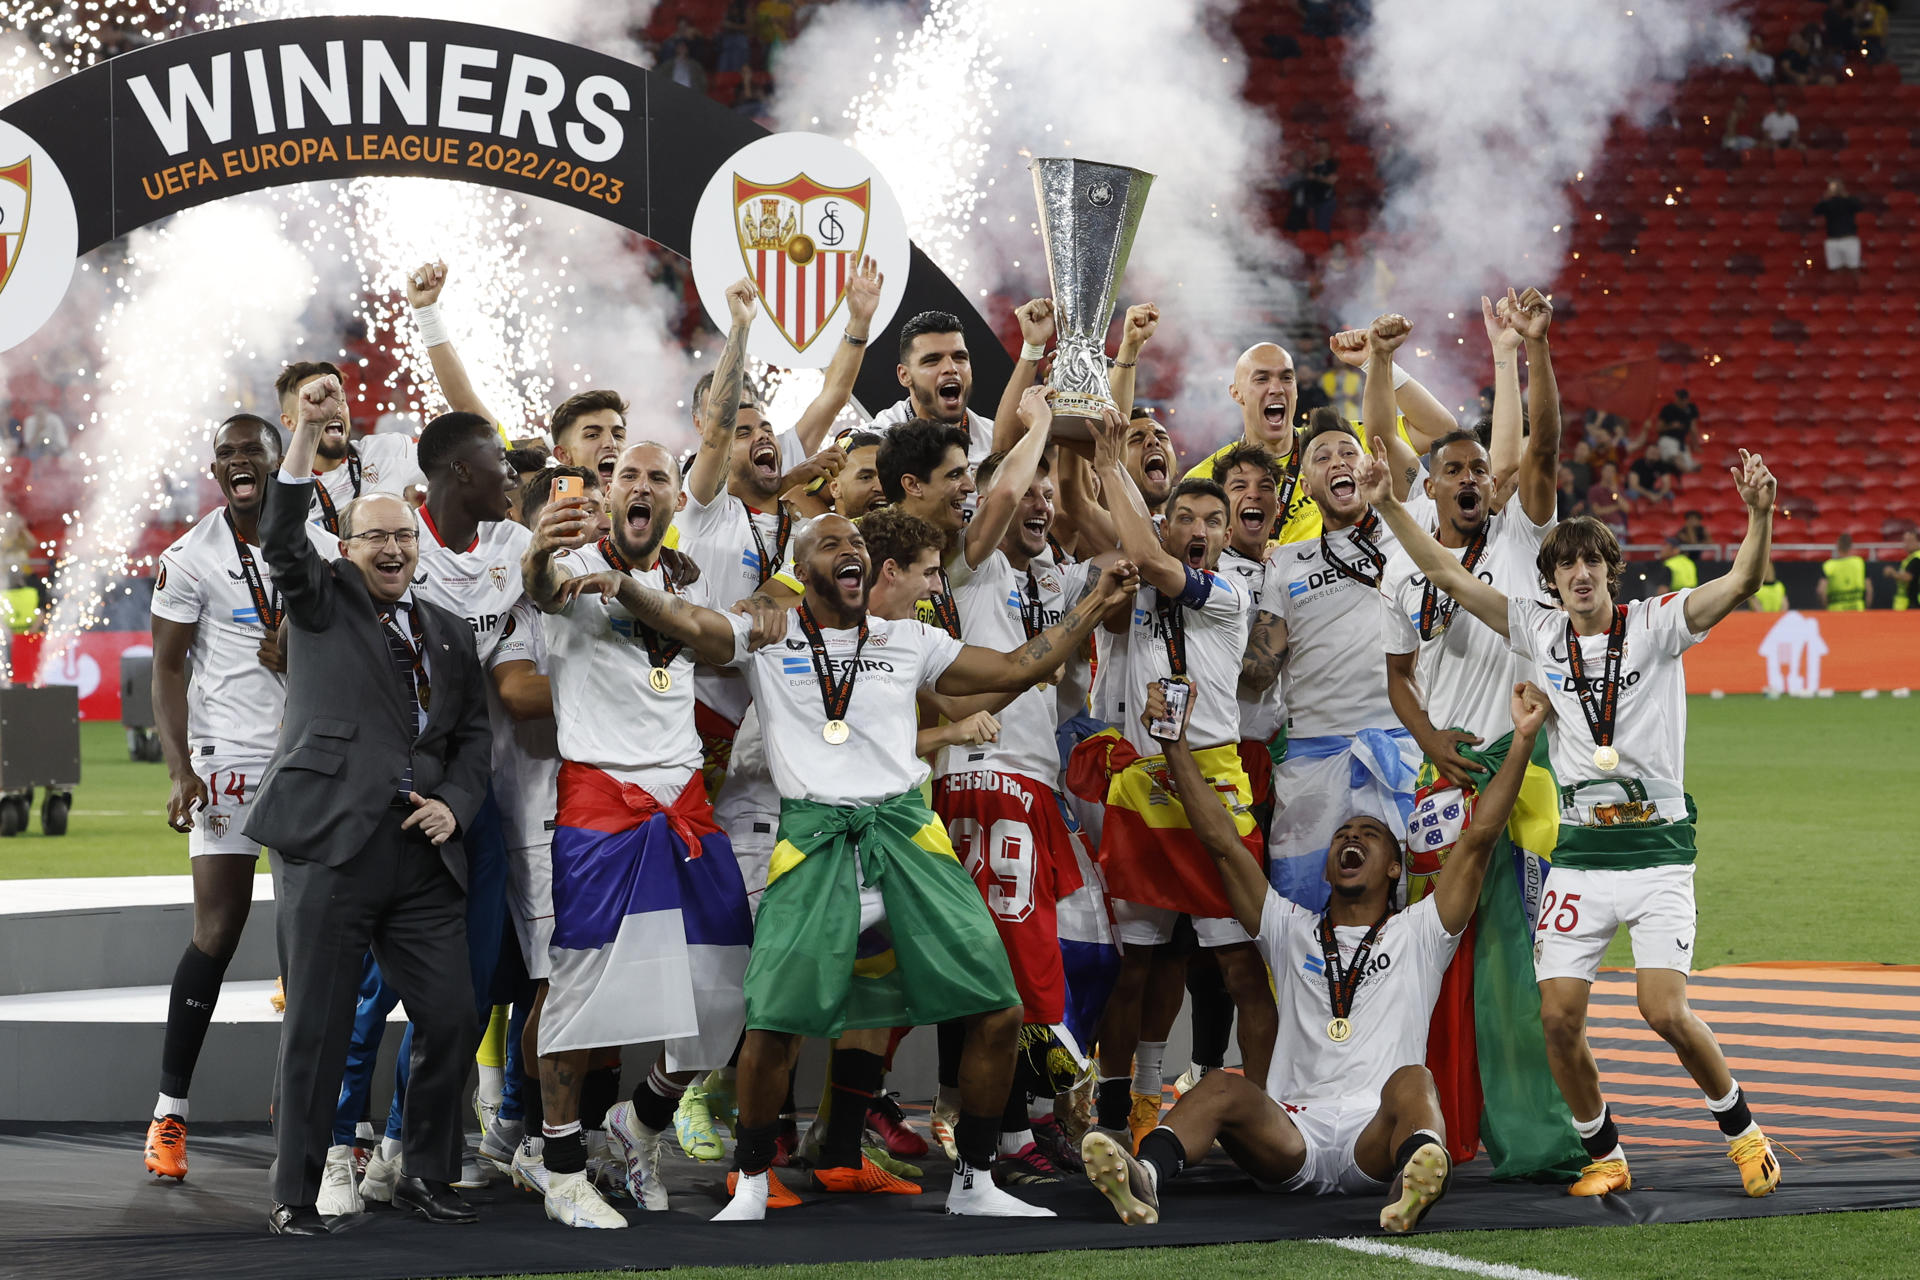 Los jugadores del Sevilla celebran su triunfo en la final de la Europa League tras derrotar a la Roma en la tanda de penaltis del encuentro que han disputado este miércoles en el Puskas Arena de Budapest (Hungría). EFE/ Julio Muñoz.